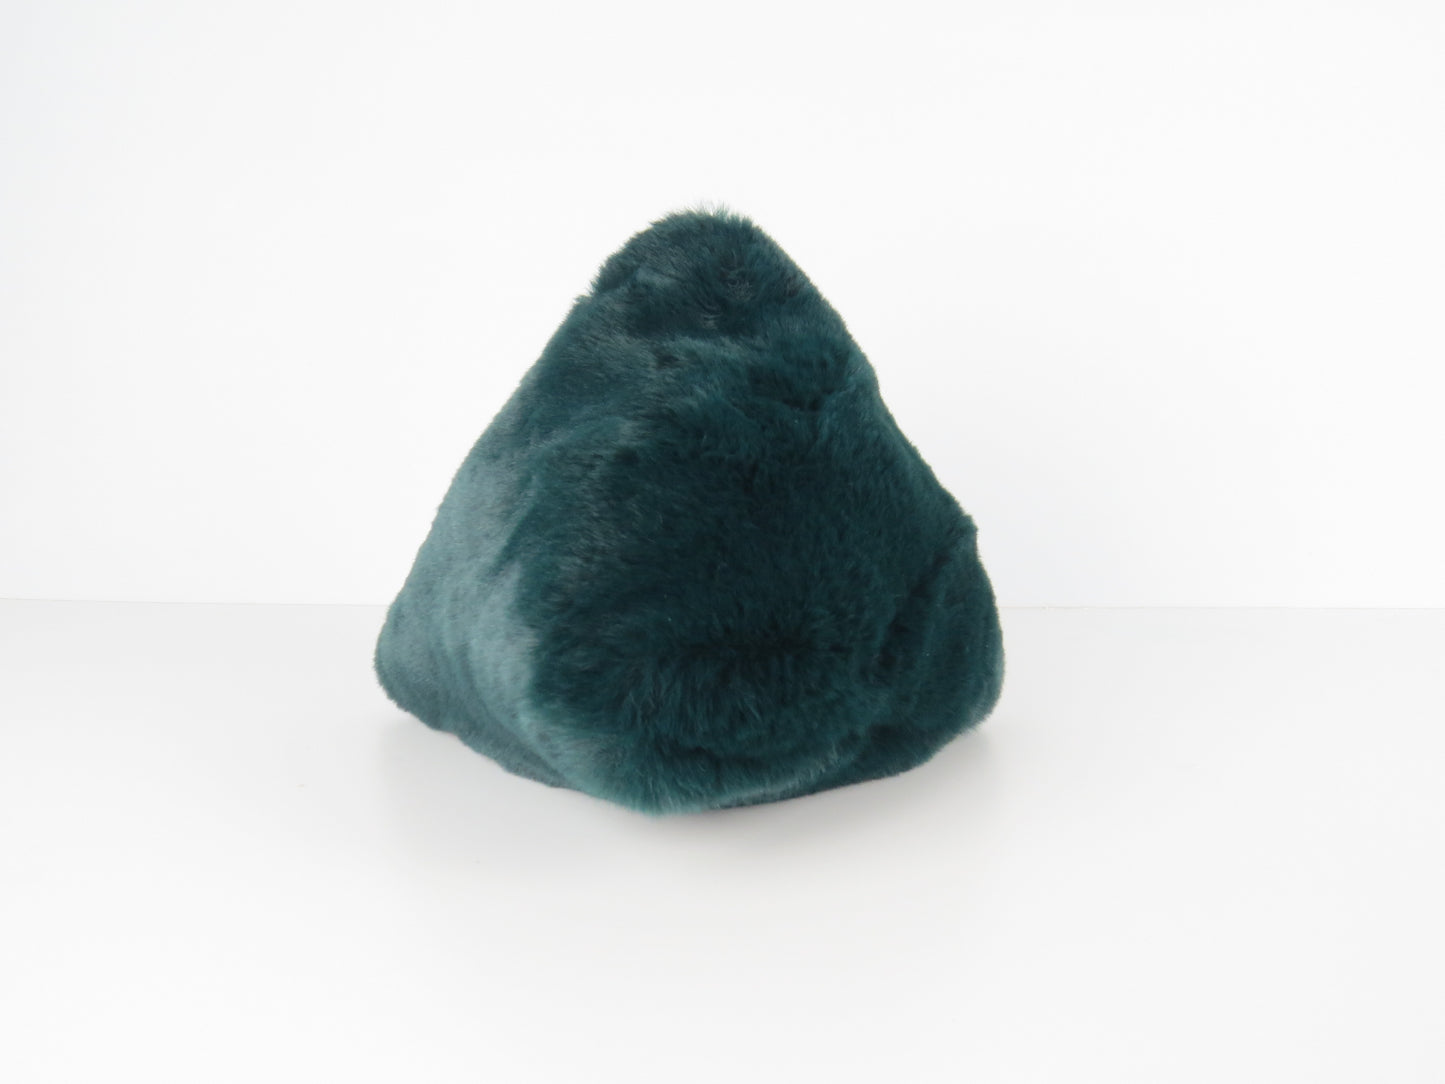 Triangular Emerald Green Faux Fur Bag Soft Fluffy Purse